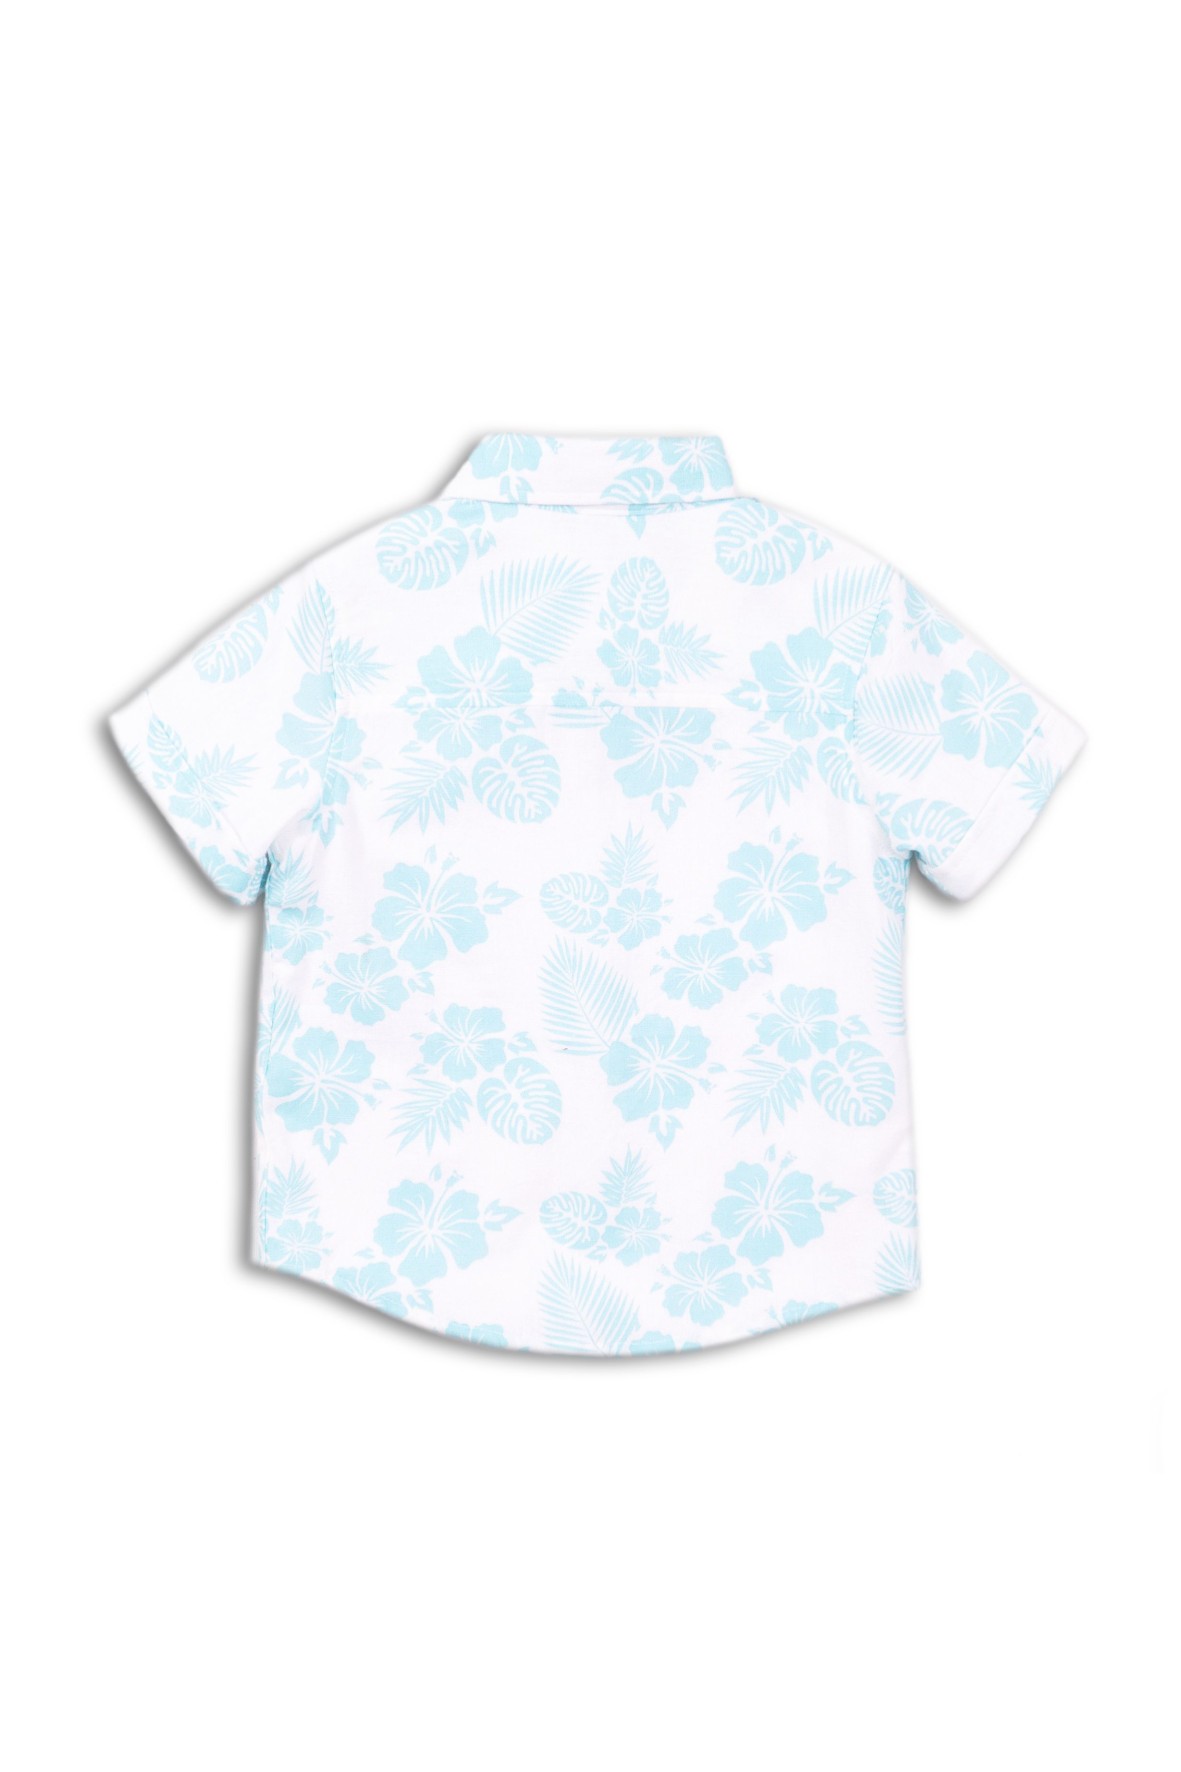 Koszula chłopięca w niebieskie kwiaty rozmiar 92/98